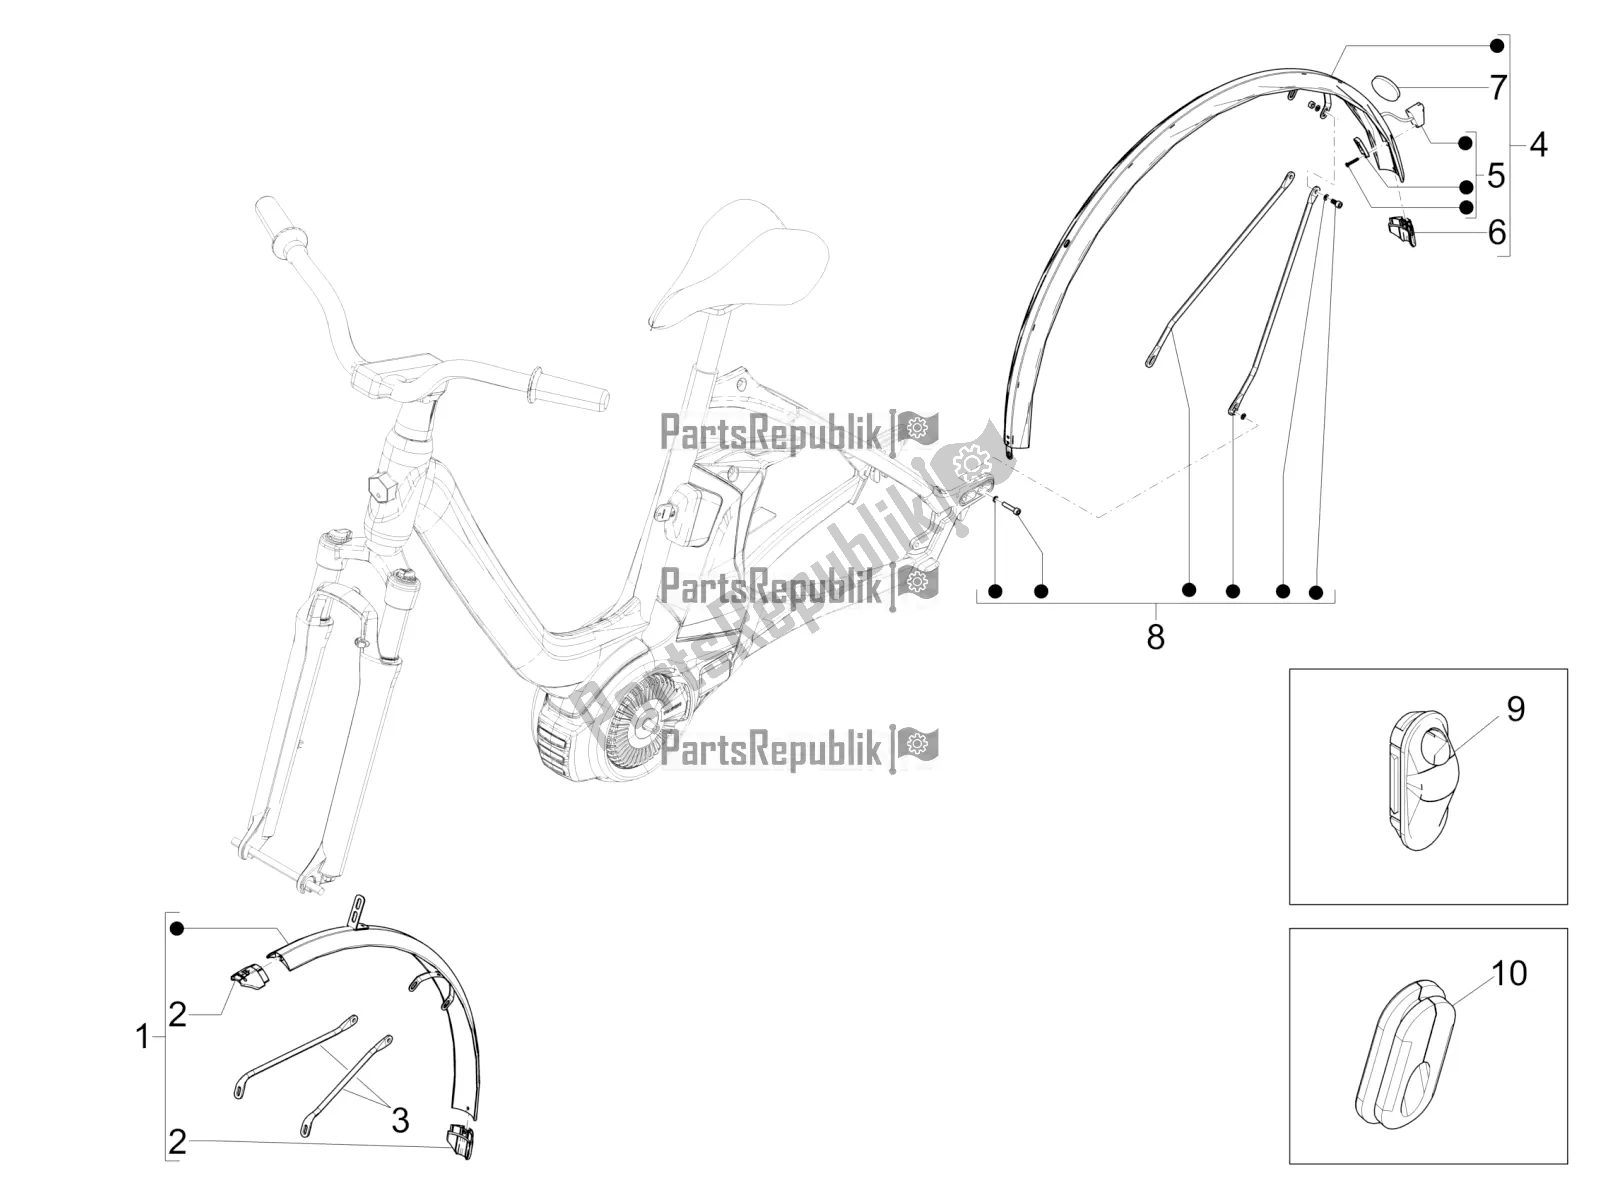 Todas las partes para Guardabarros de Piaggio Wi-bike UNI Deore Comfort 0 2016